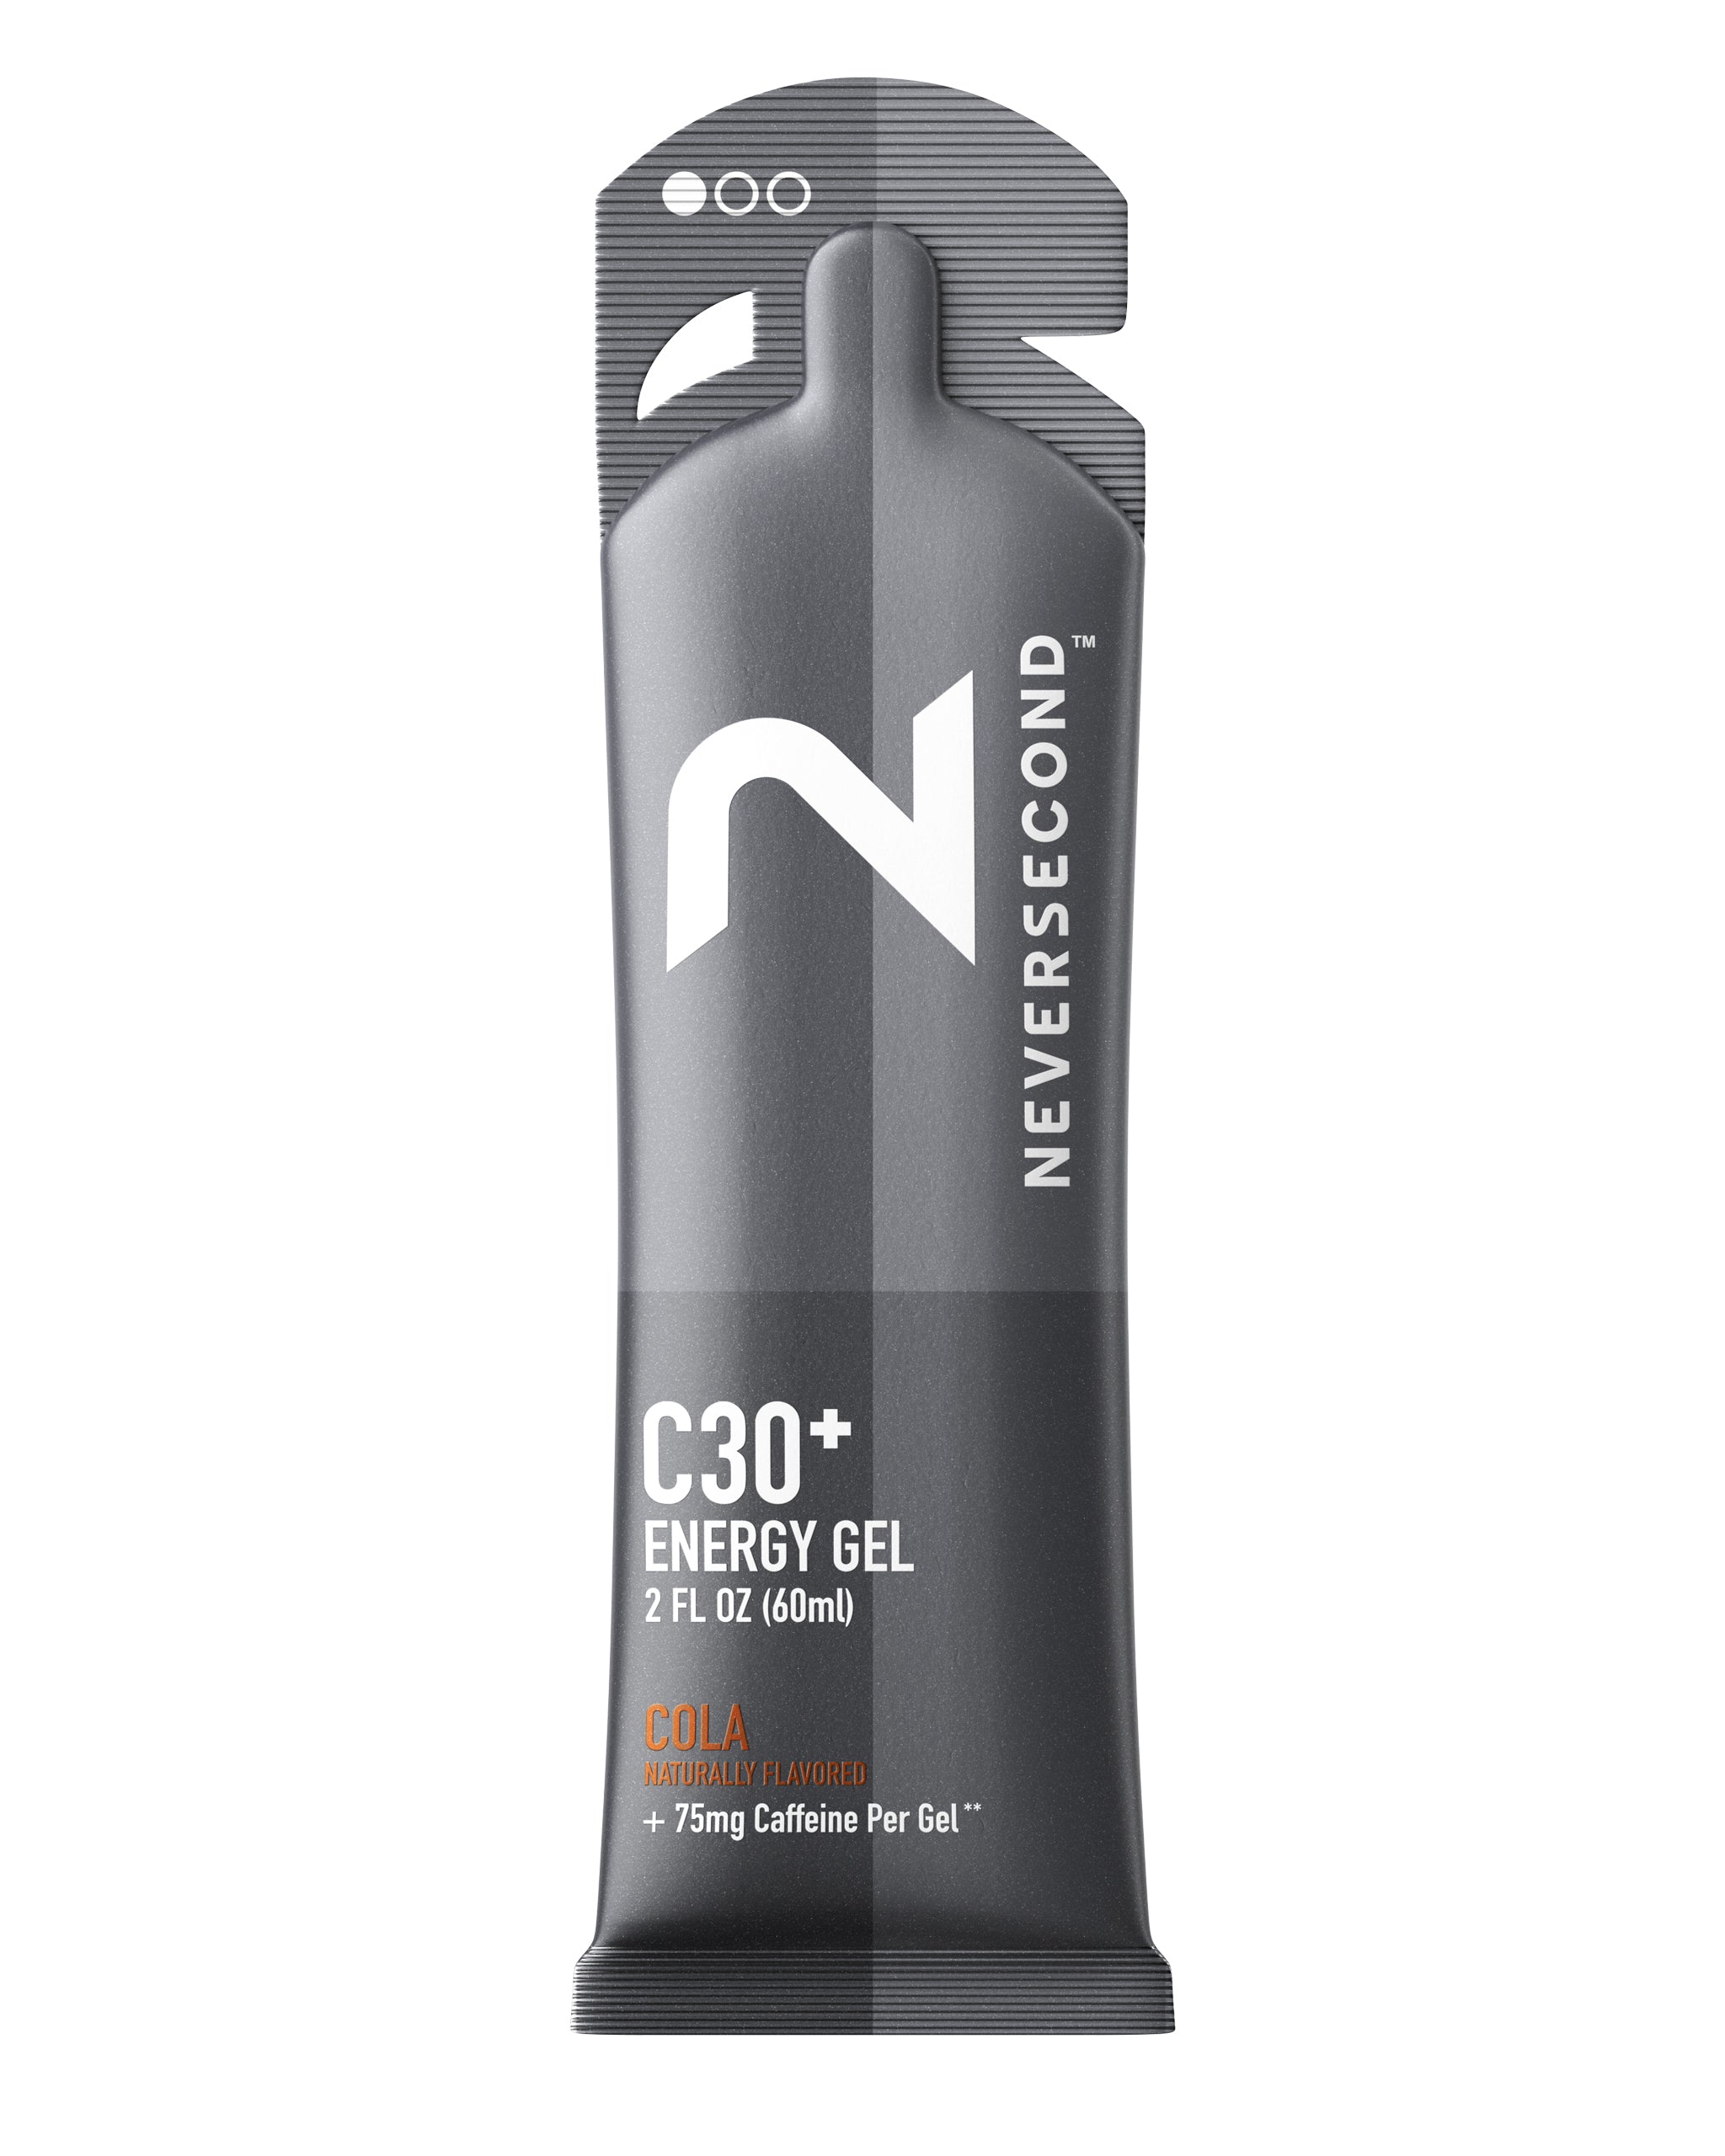 Neversecond C30+ Energy Gel Cola